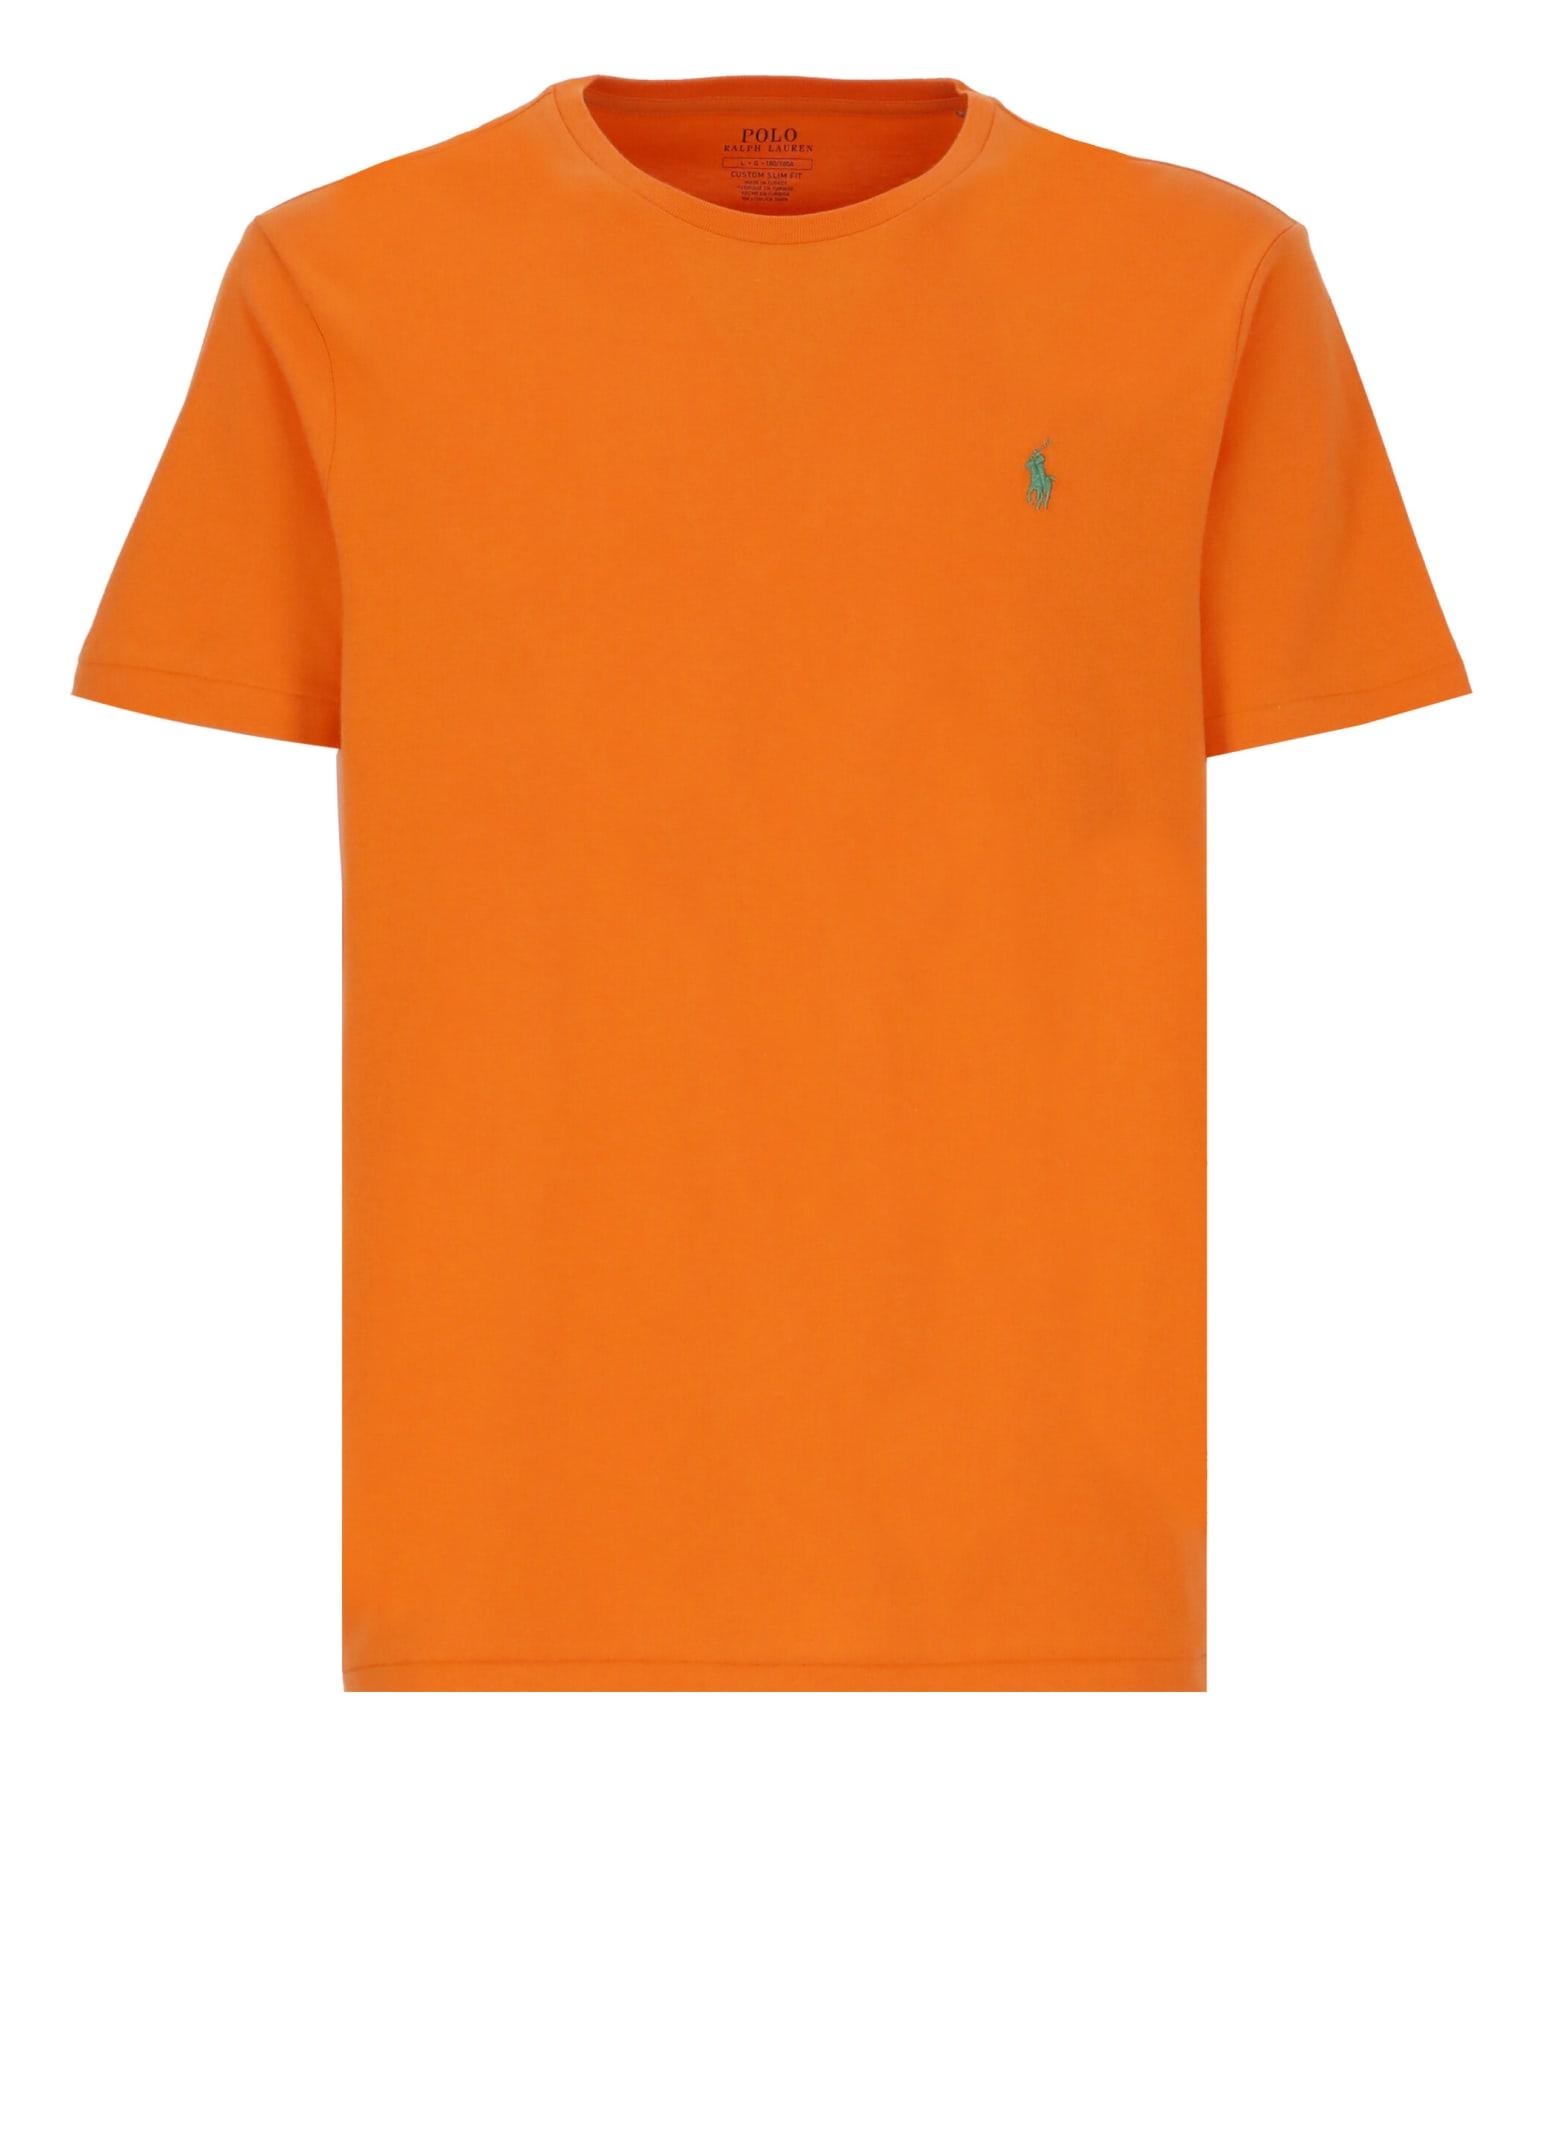 Ralph Lauren T-shirt With Pony in Orange for Men | Lyst